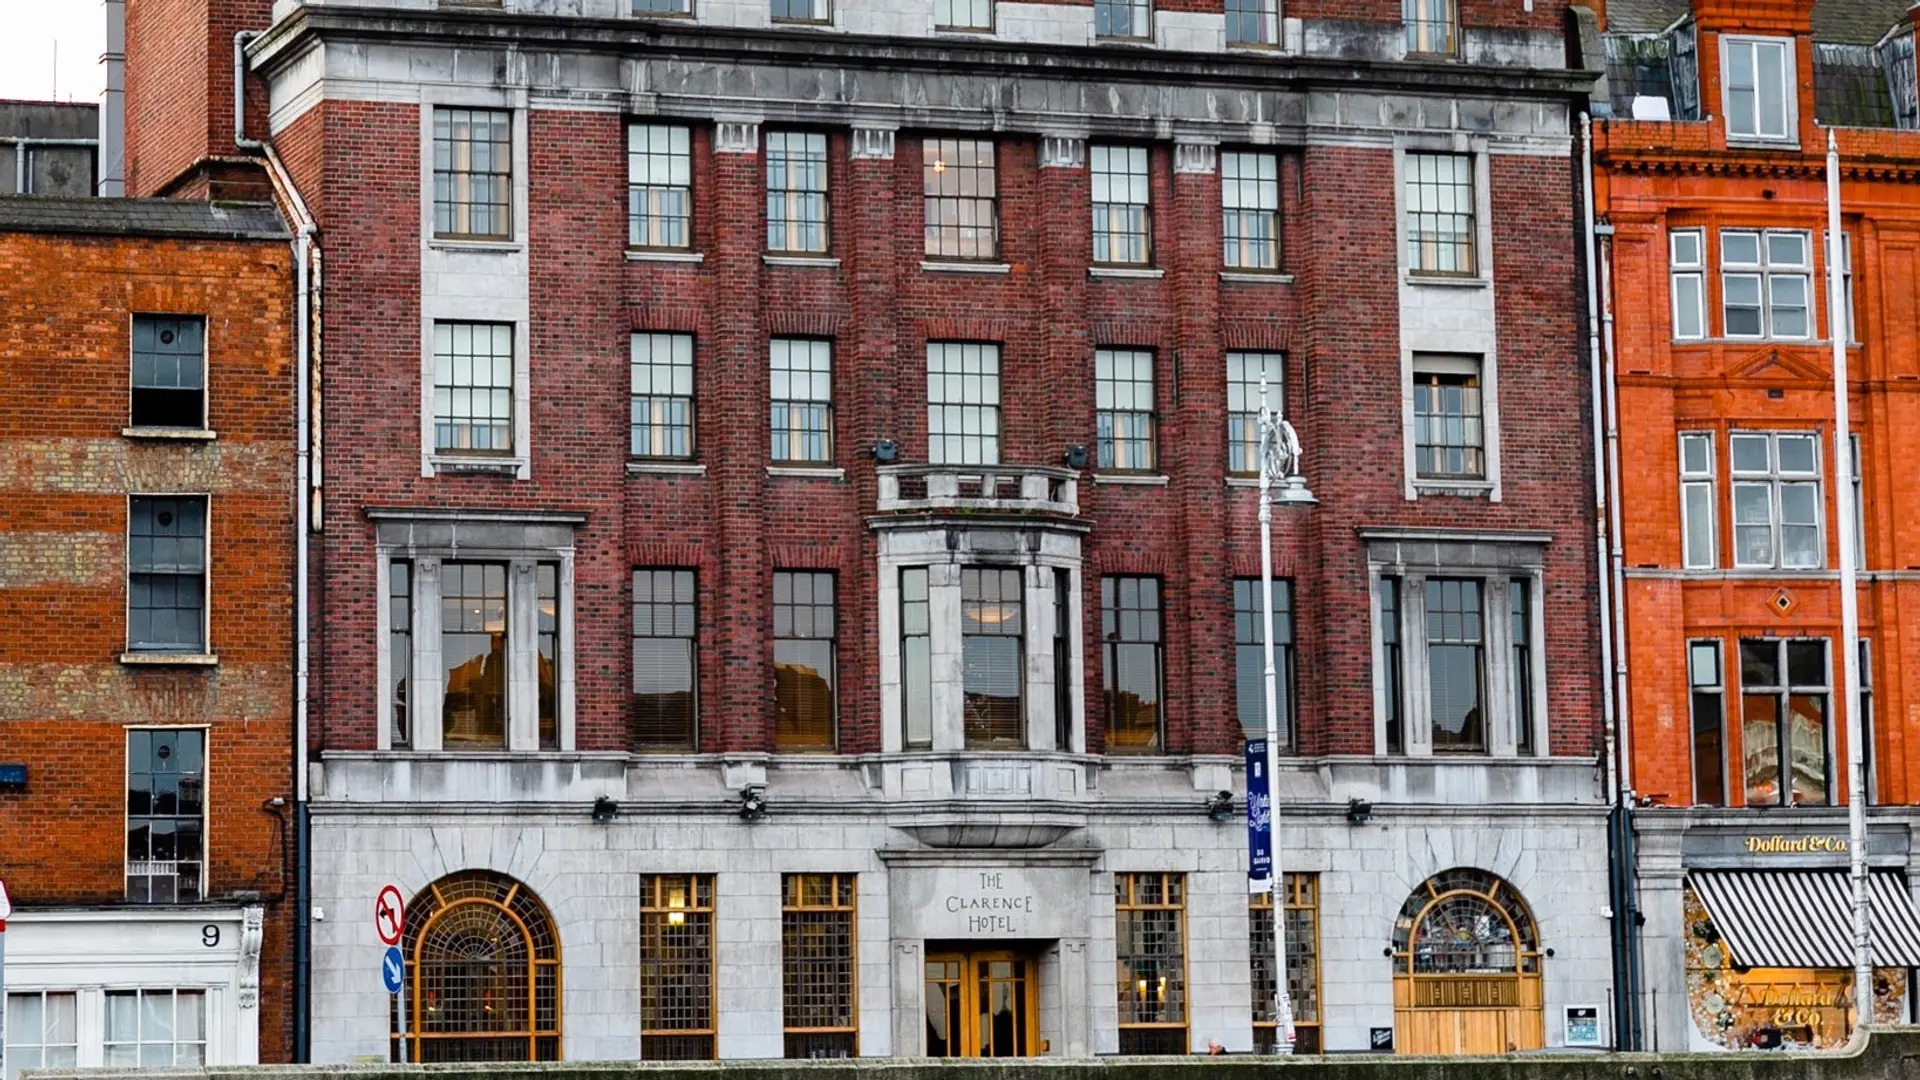 Hotels Toplists - The Best Luxury Hotels in Dublin